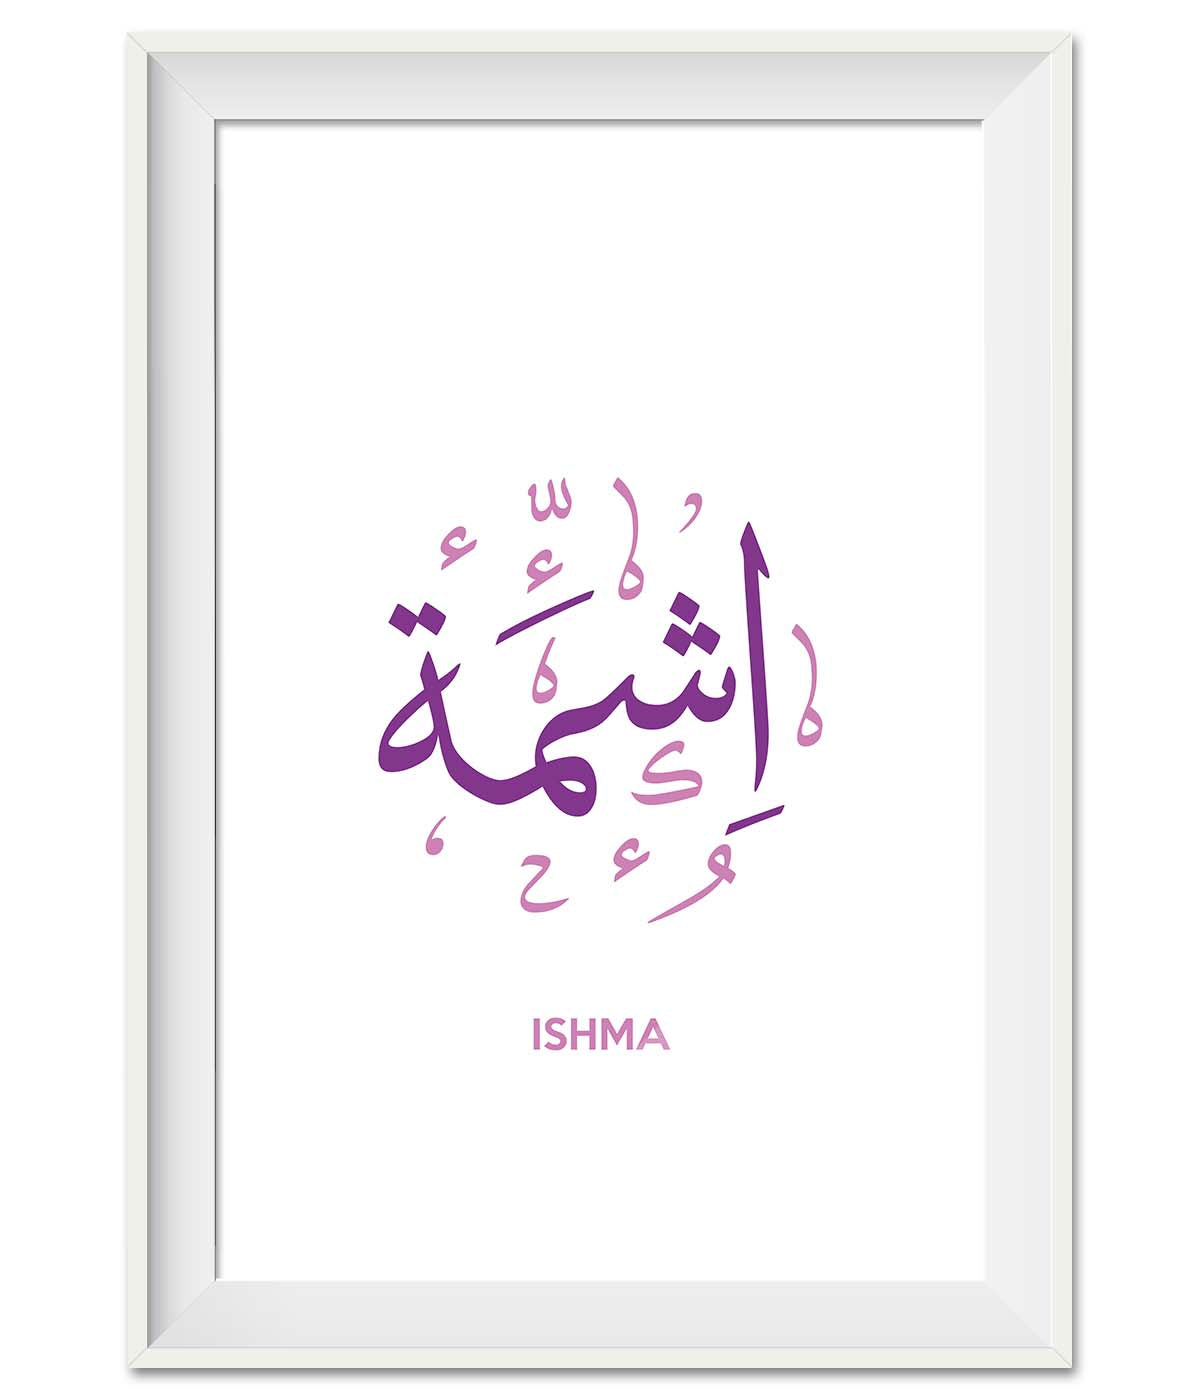 Ishma